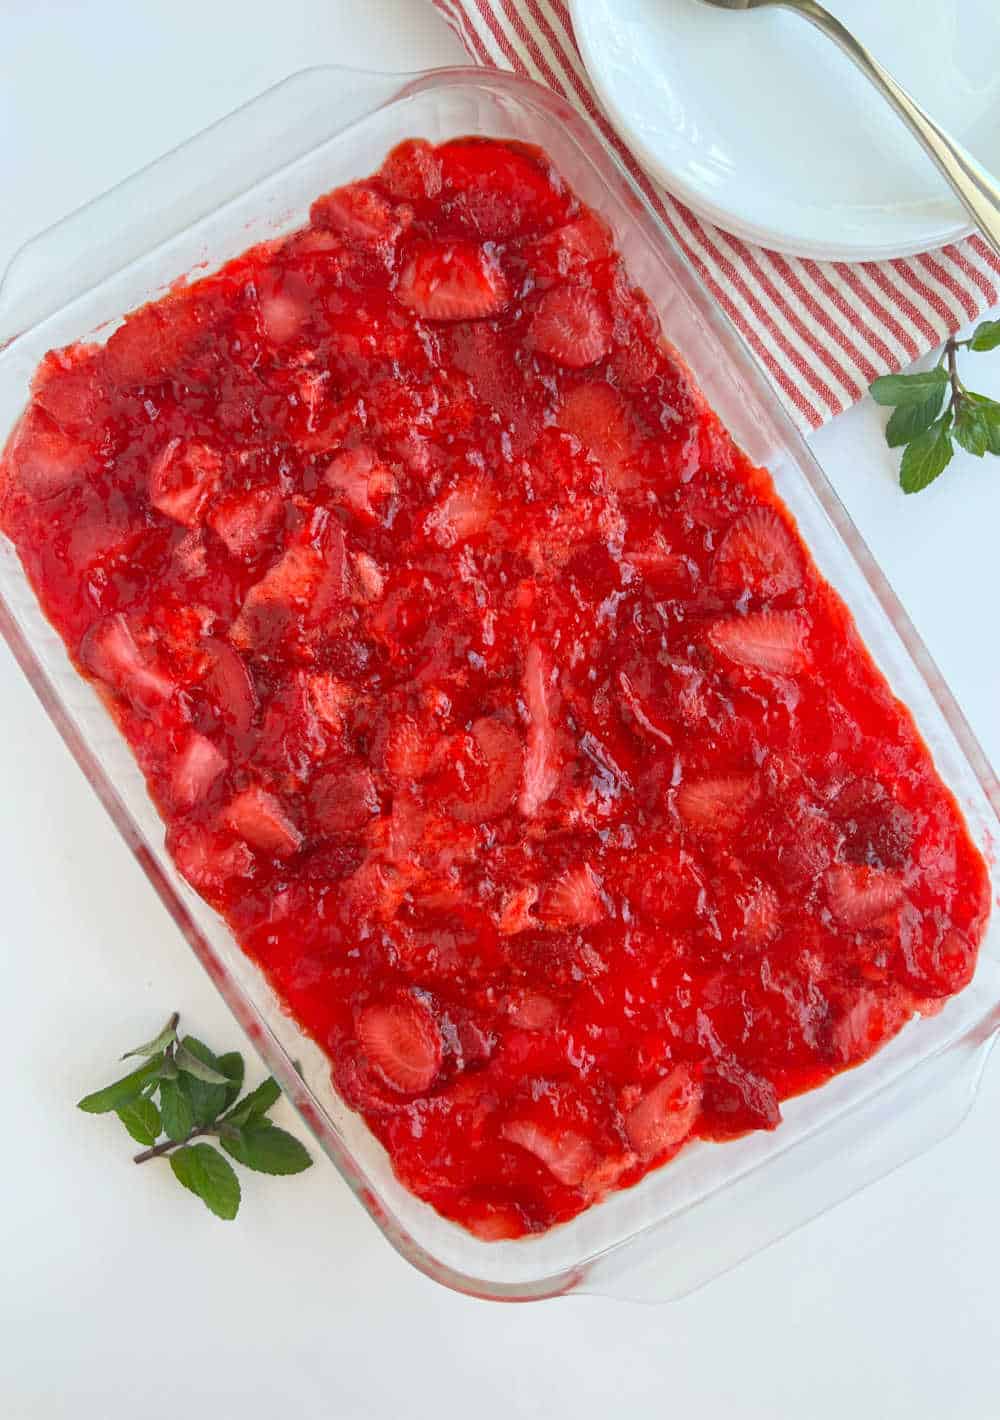 strawberry jello pretzel dessert in pan on the table.